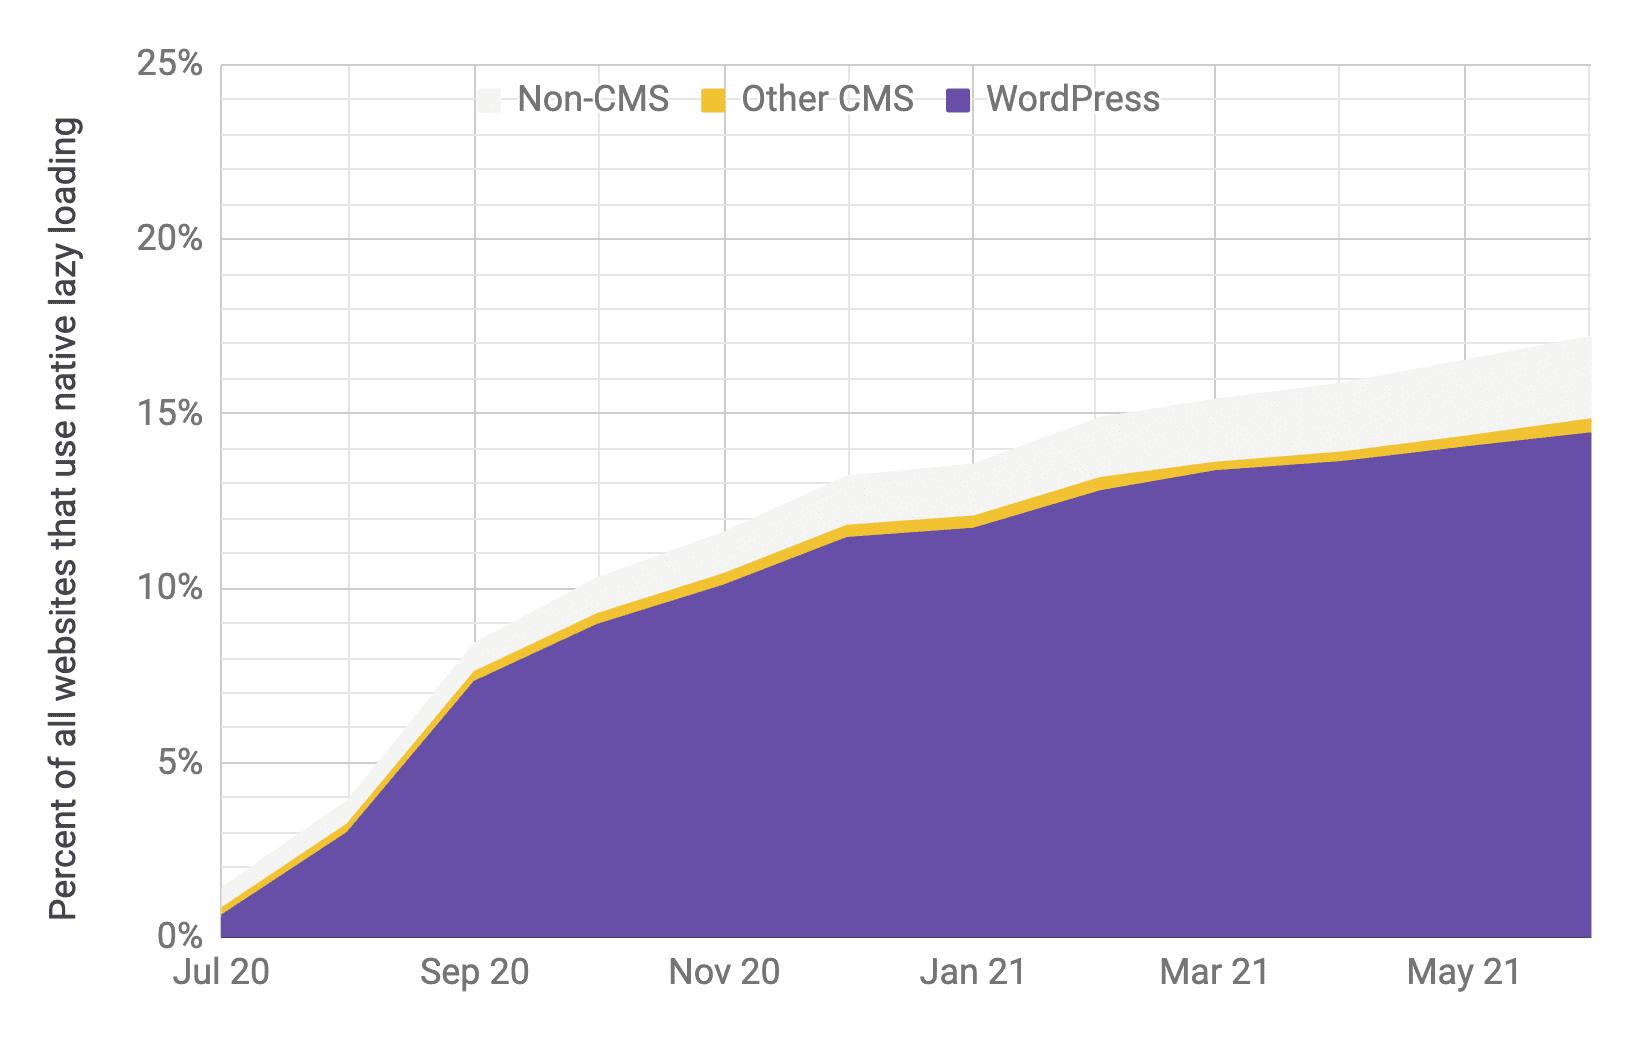 Grafico con serie temporale dell&#39;adozione del caricamento lento, in cui WordPress è il player predominante rispetto ad altri CMS e non CMS, con proporzioni simili a quelle del grafico precedente. È dimostrato che l&#39;adozione totale è aumentata rapidamente dall&#39;1% al 17% da luglio 2020 a giugno 2021.